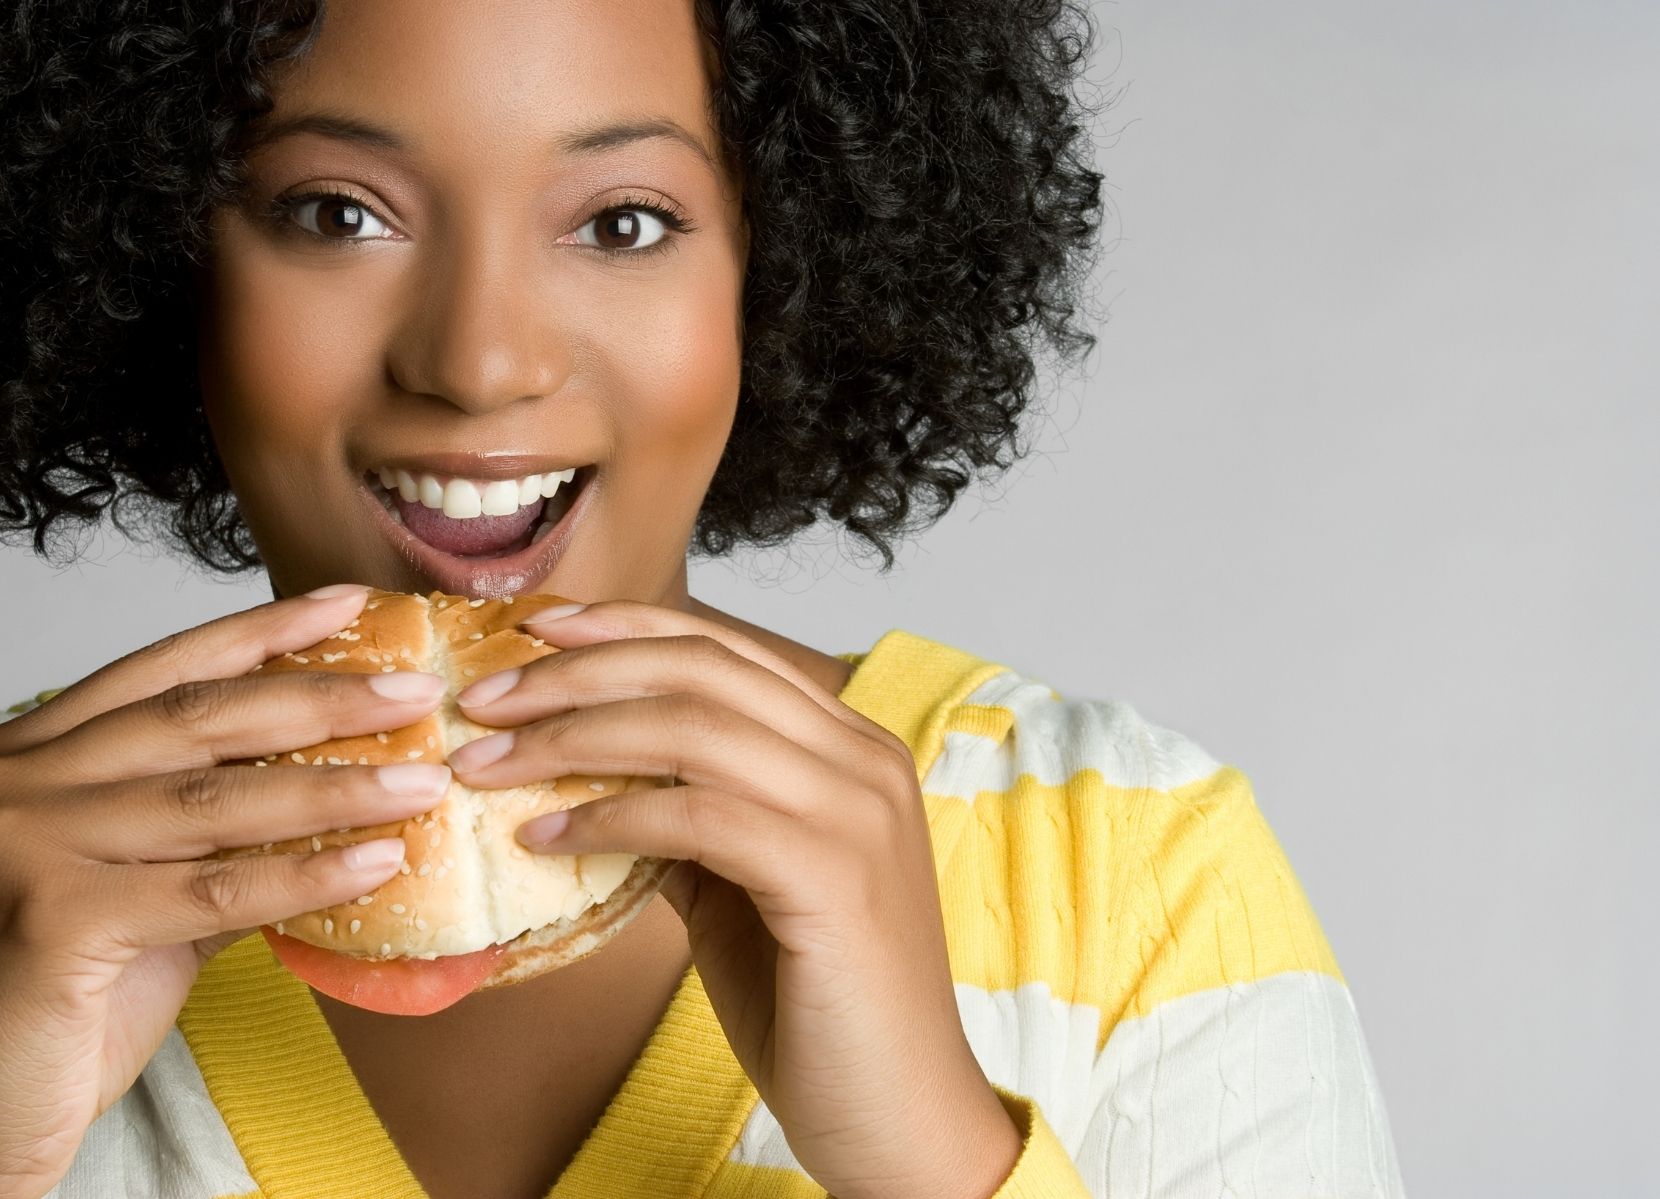 Vrouw eet broodje van restaurant